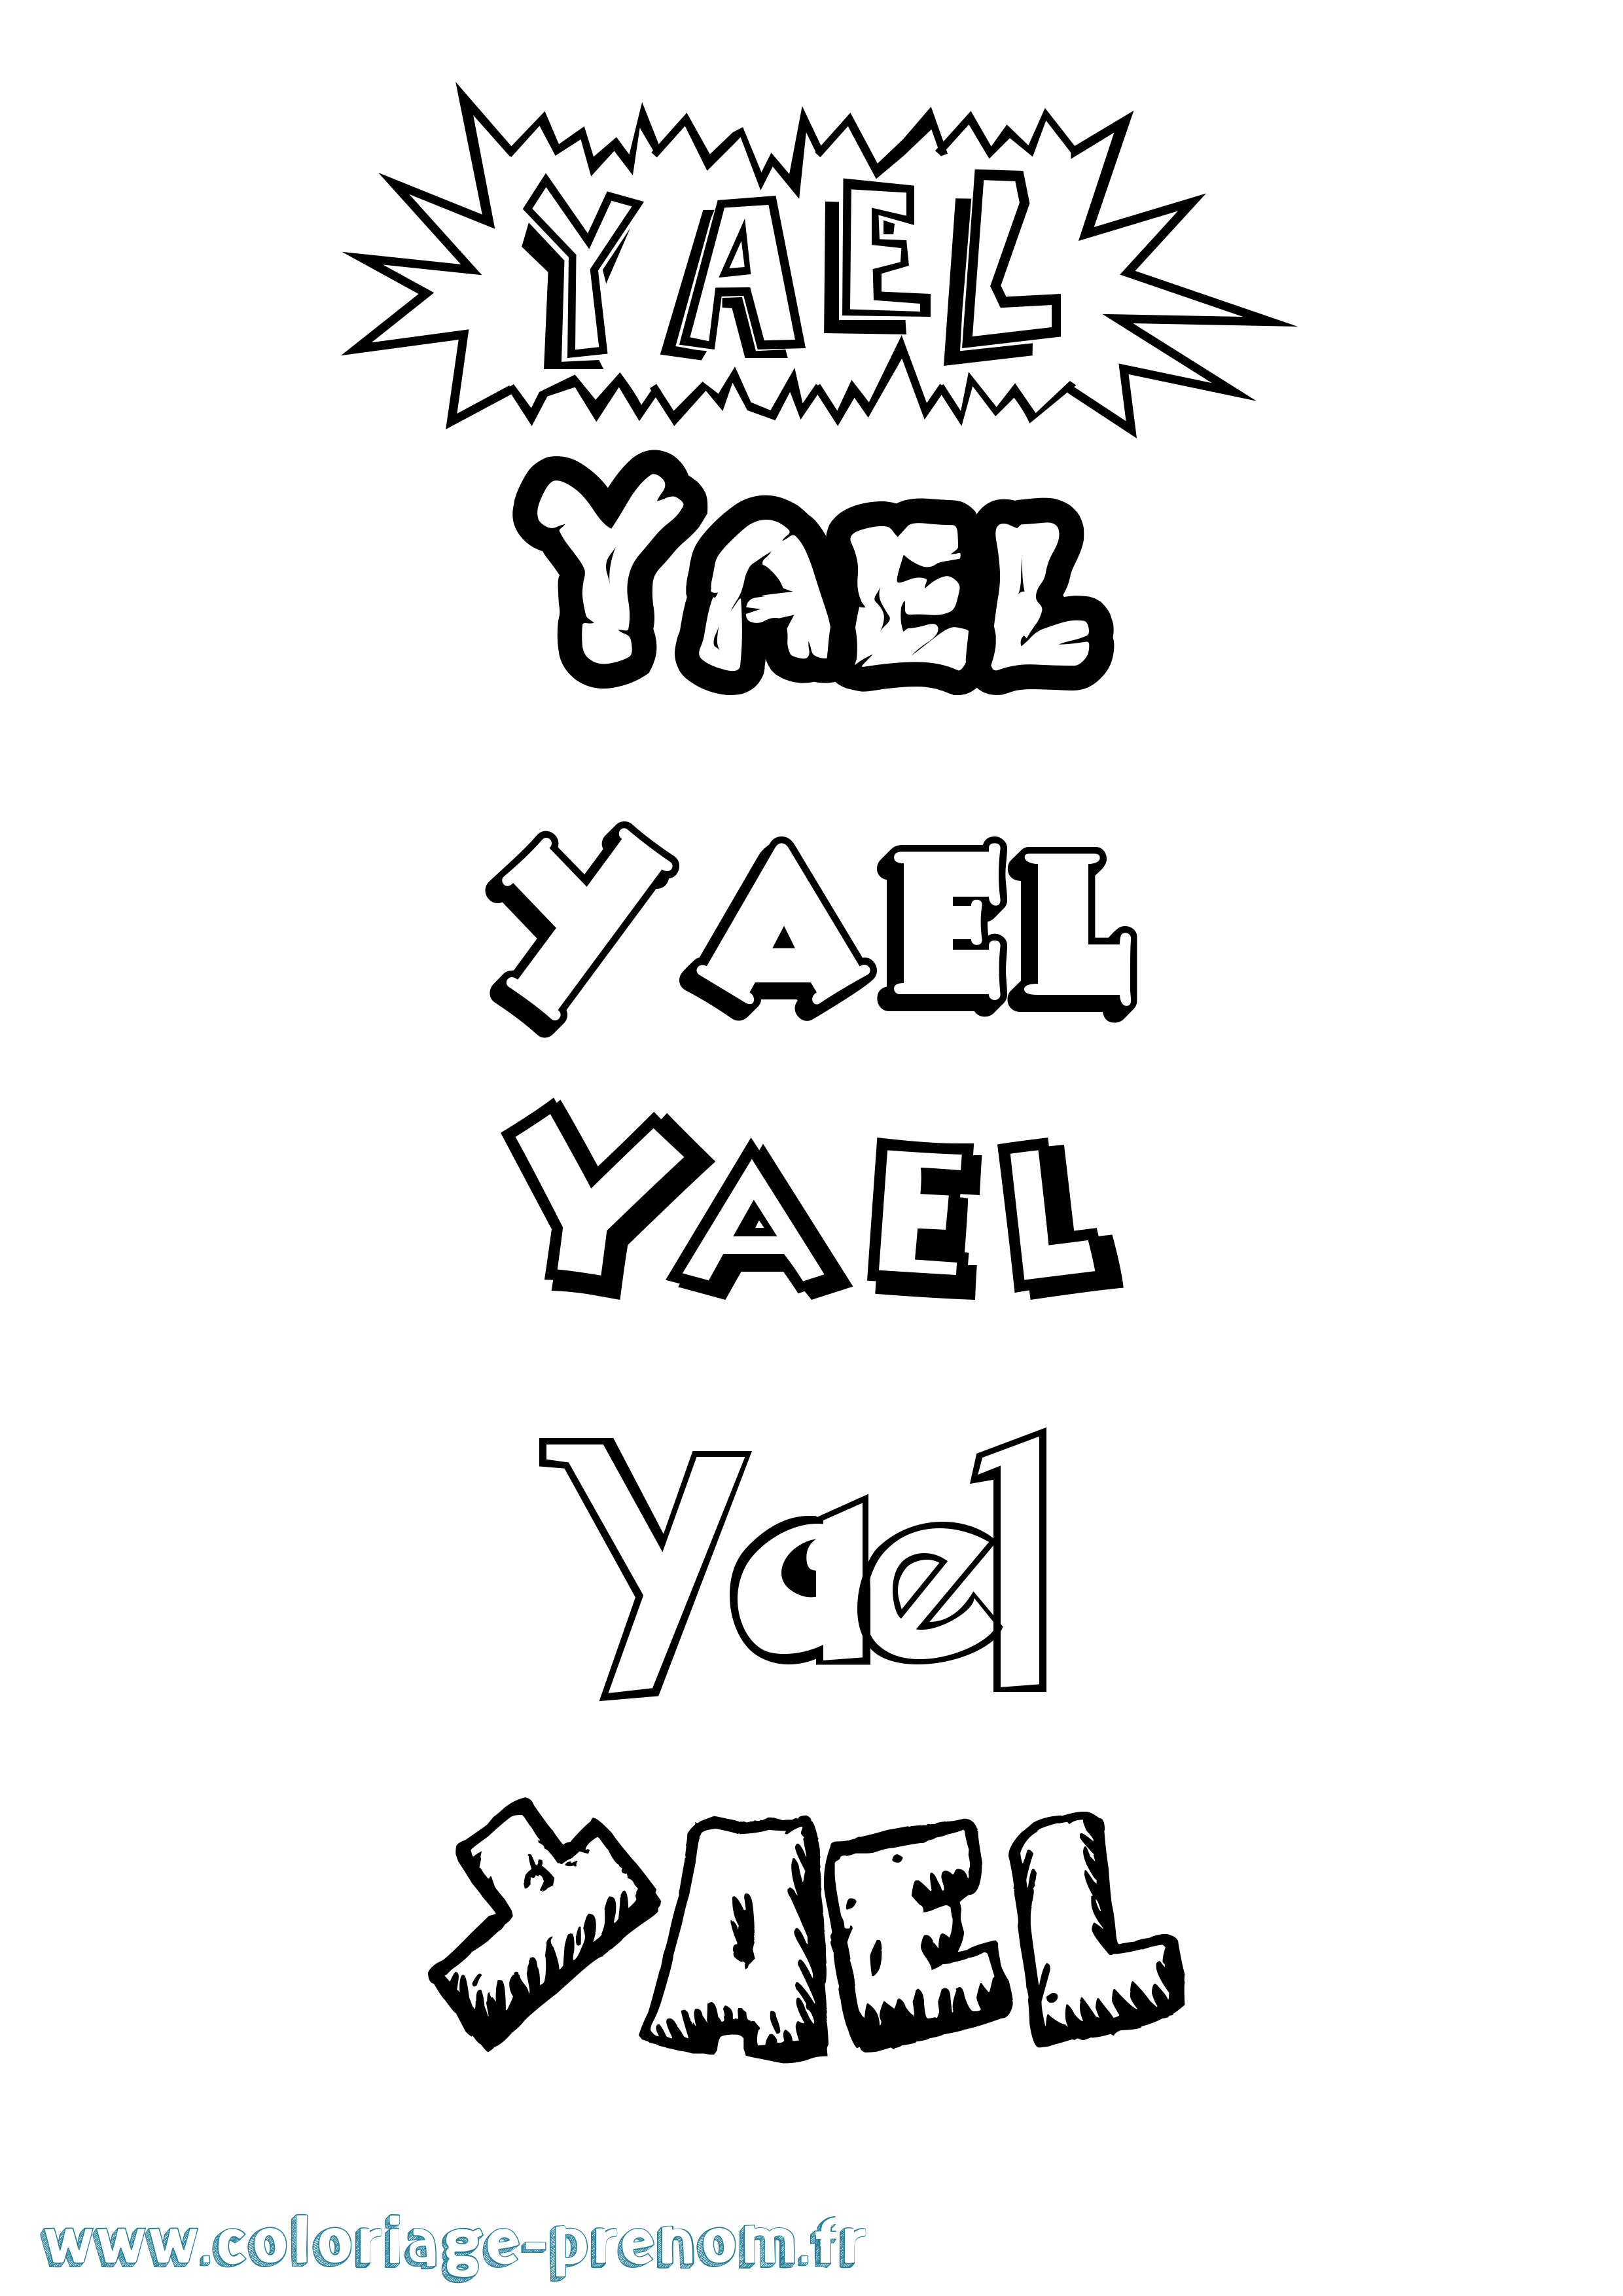 Coloriage prénom Yael